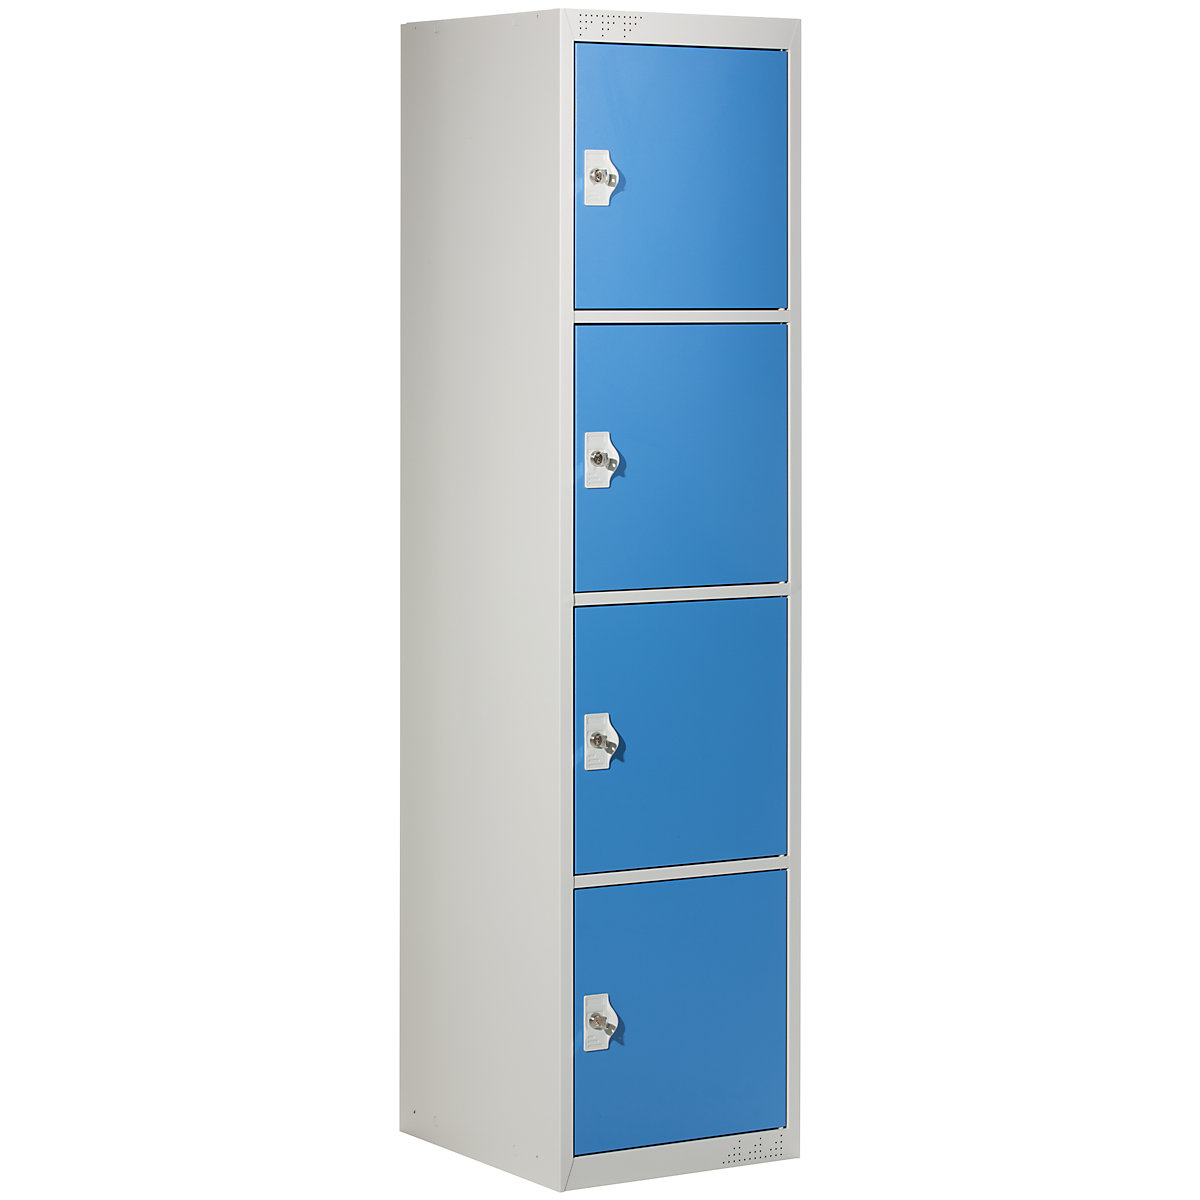 Vestiaire multicases avec 4 casiers verrouillables, h x l x p 1800 x 450 x 500 mm, gris clair / bleu clair, élément additionnel